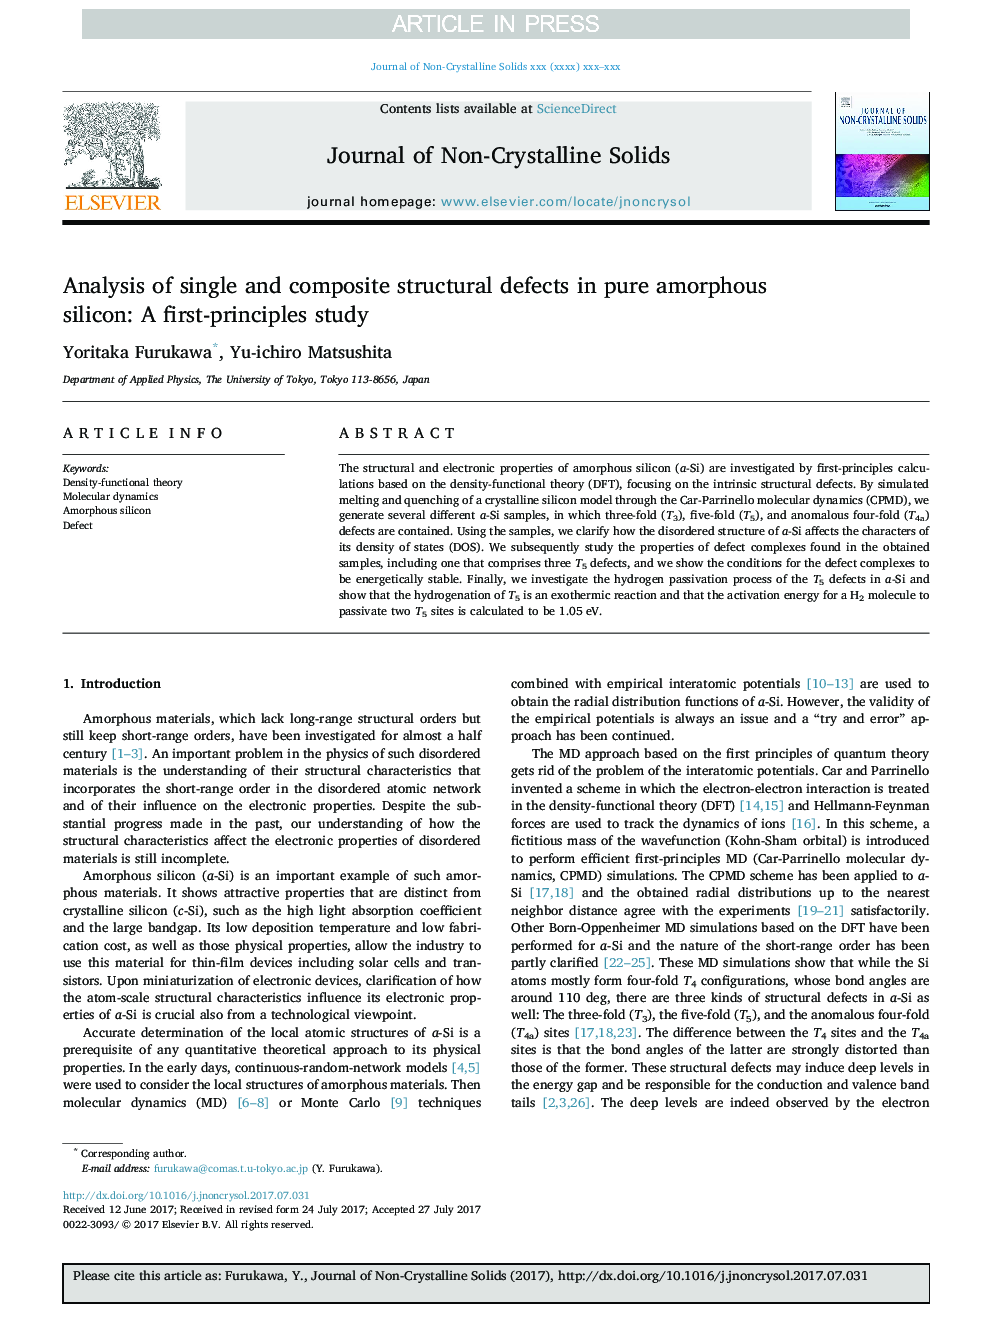 تجزیه و تحلیل نقص ساختاری تک و کامپوزیت در سیلیکون آمورف خالص: یک مطالعه اولیه 